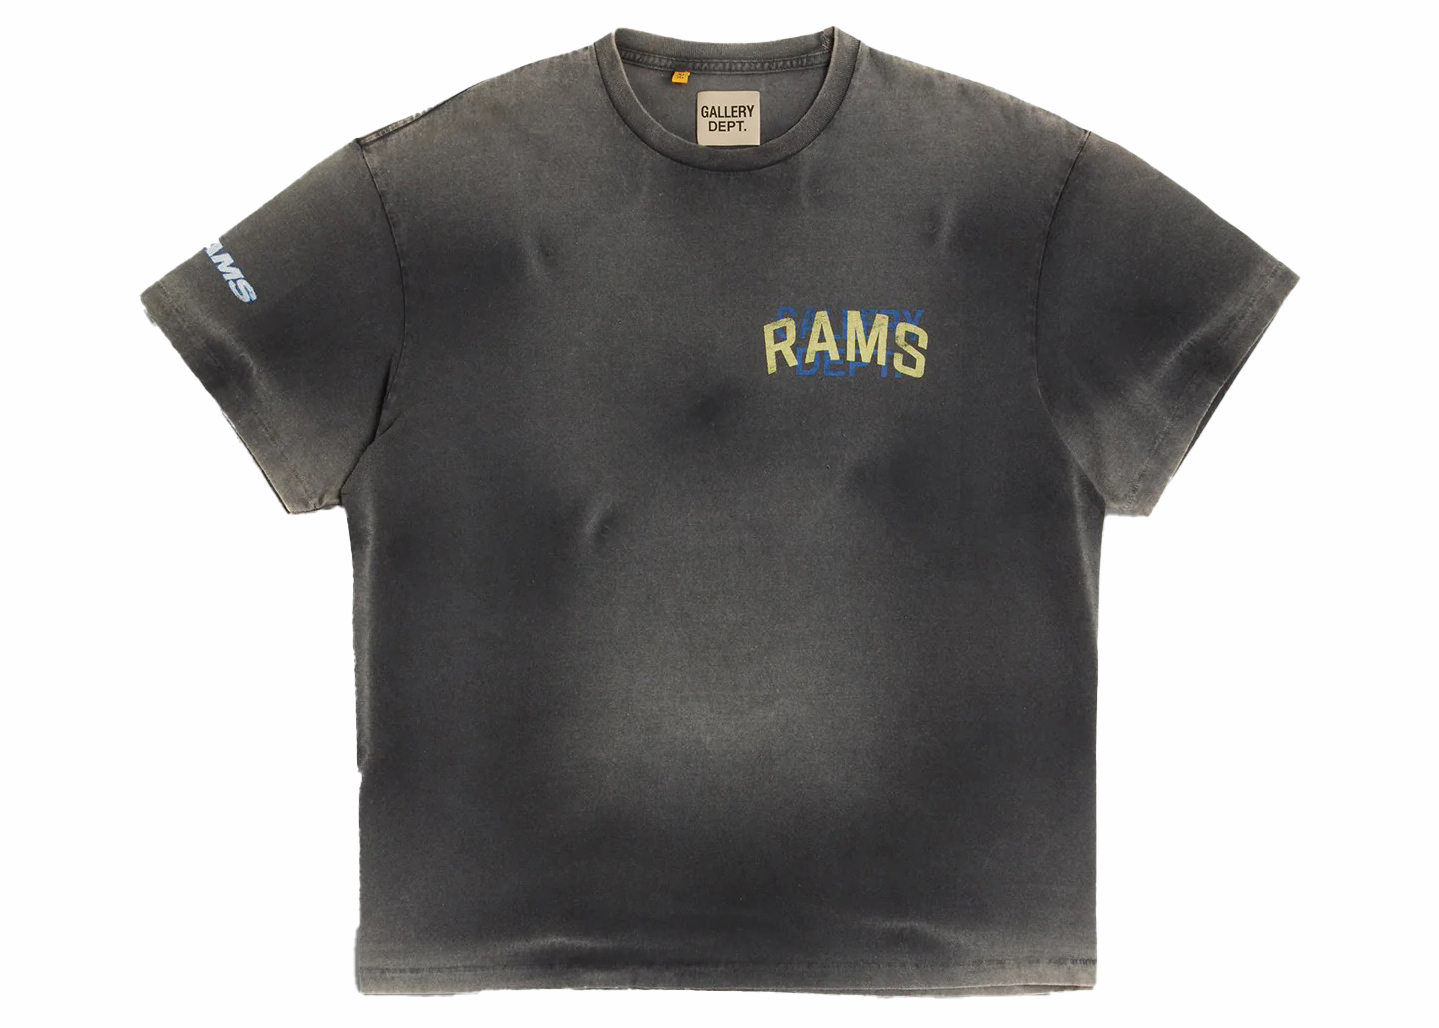 Gallery Dept. LA Rams Color Block Tシャツ